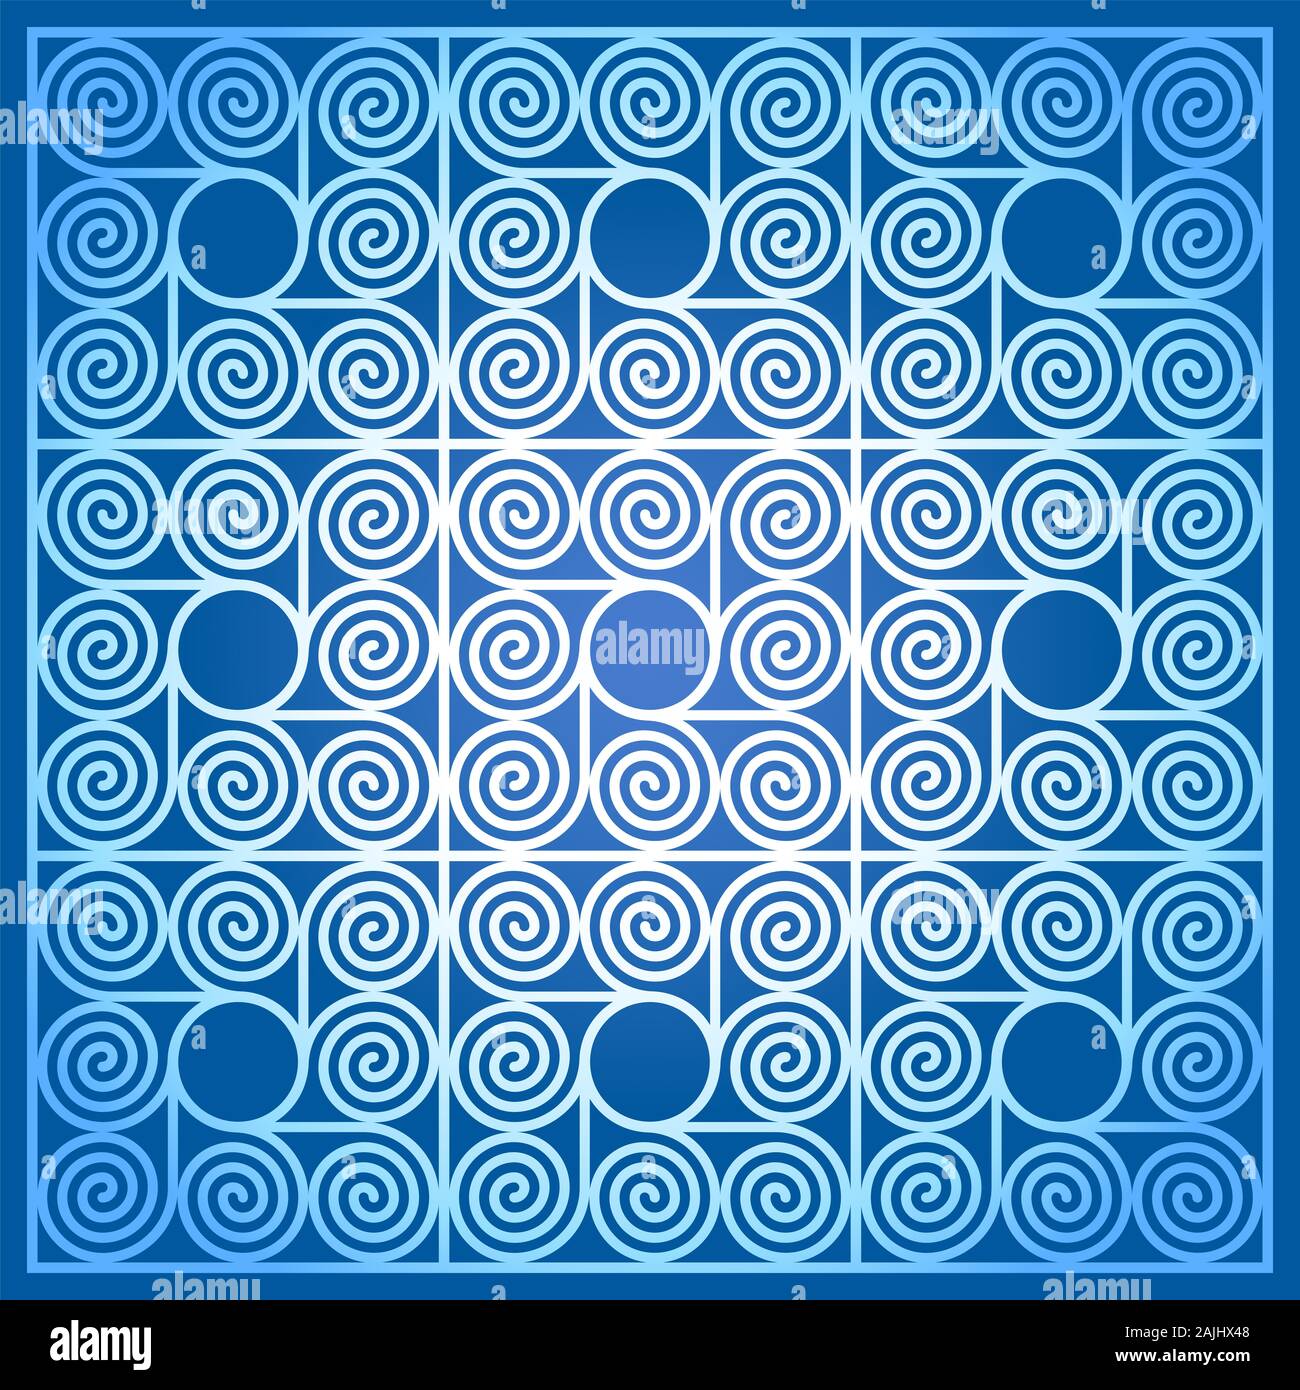 Arrière-plan de couleur bleu en forme de carré de 9 carreaux, fait de l'arithmétique spirales autour d'un cercle. Schéma des spirales d'Archimède des mêmes intervalles. Banque D'Images